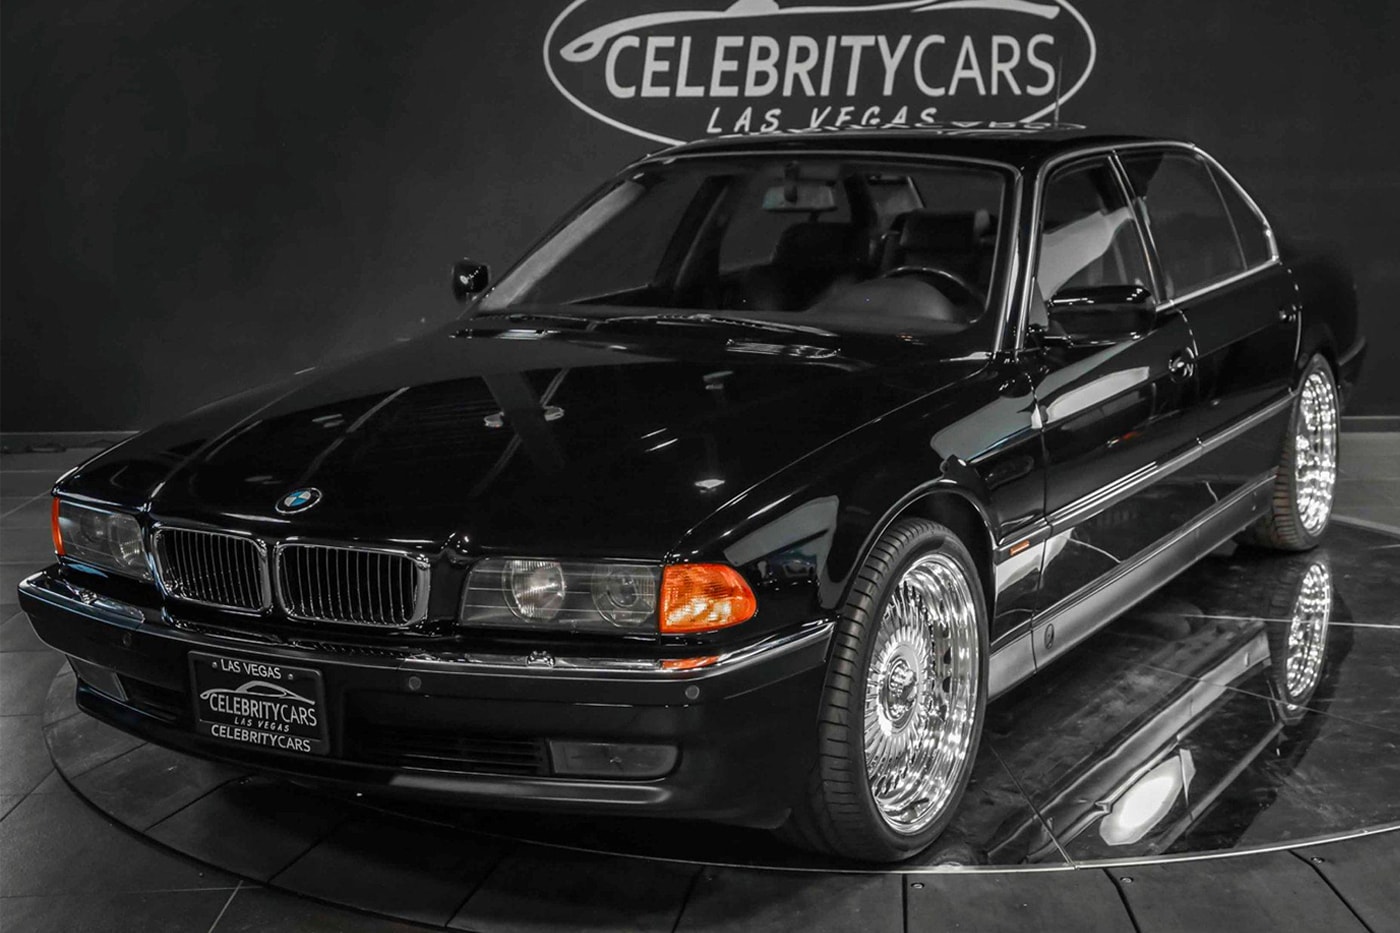 1996년 투팍이 총격 받던 당시 탑승했던 BMW 7시리즈가 판매된다, 힙합 뮤지션